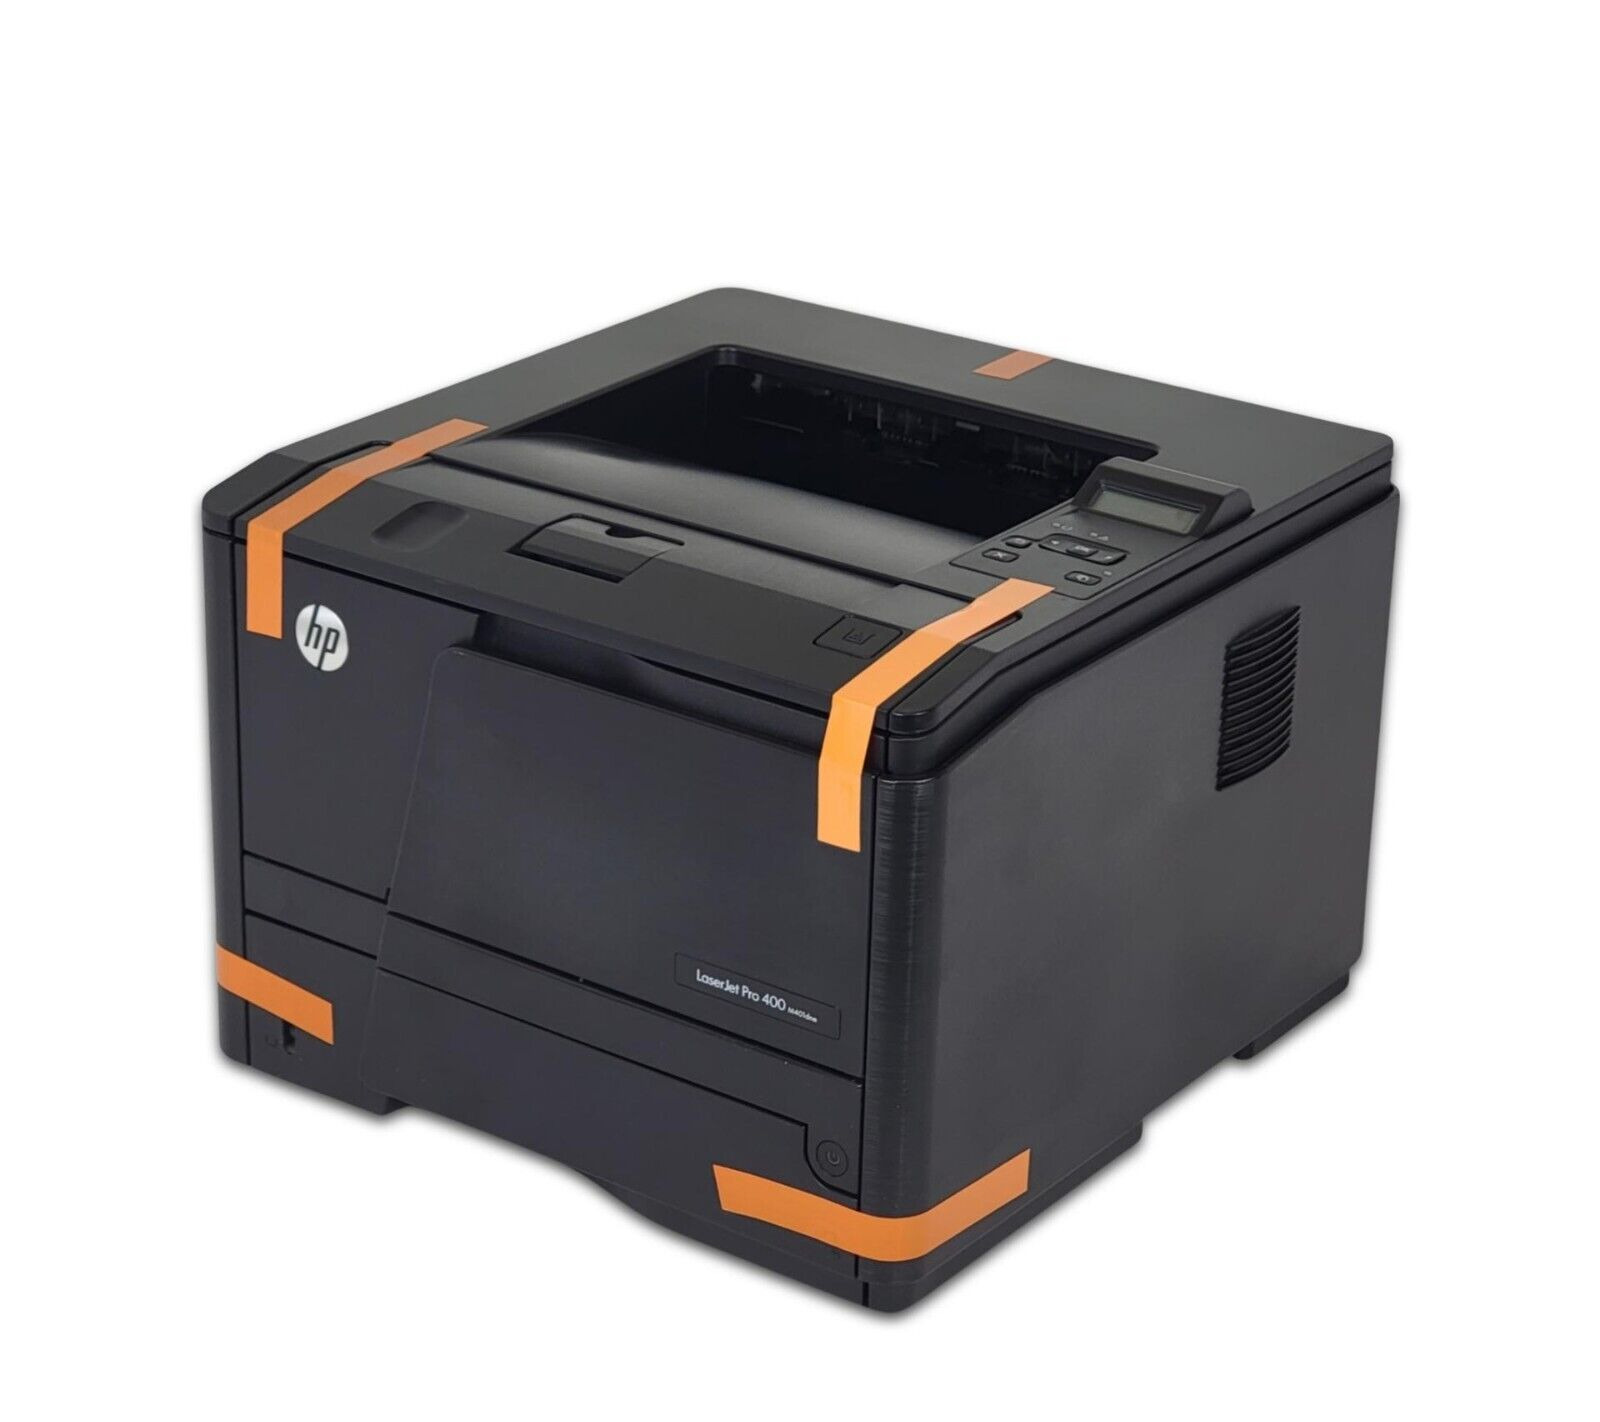 HP LaserJet Pro 400 M401dne Monochrome Laser Printer CF399A w/ NEW Toner